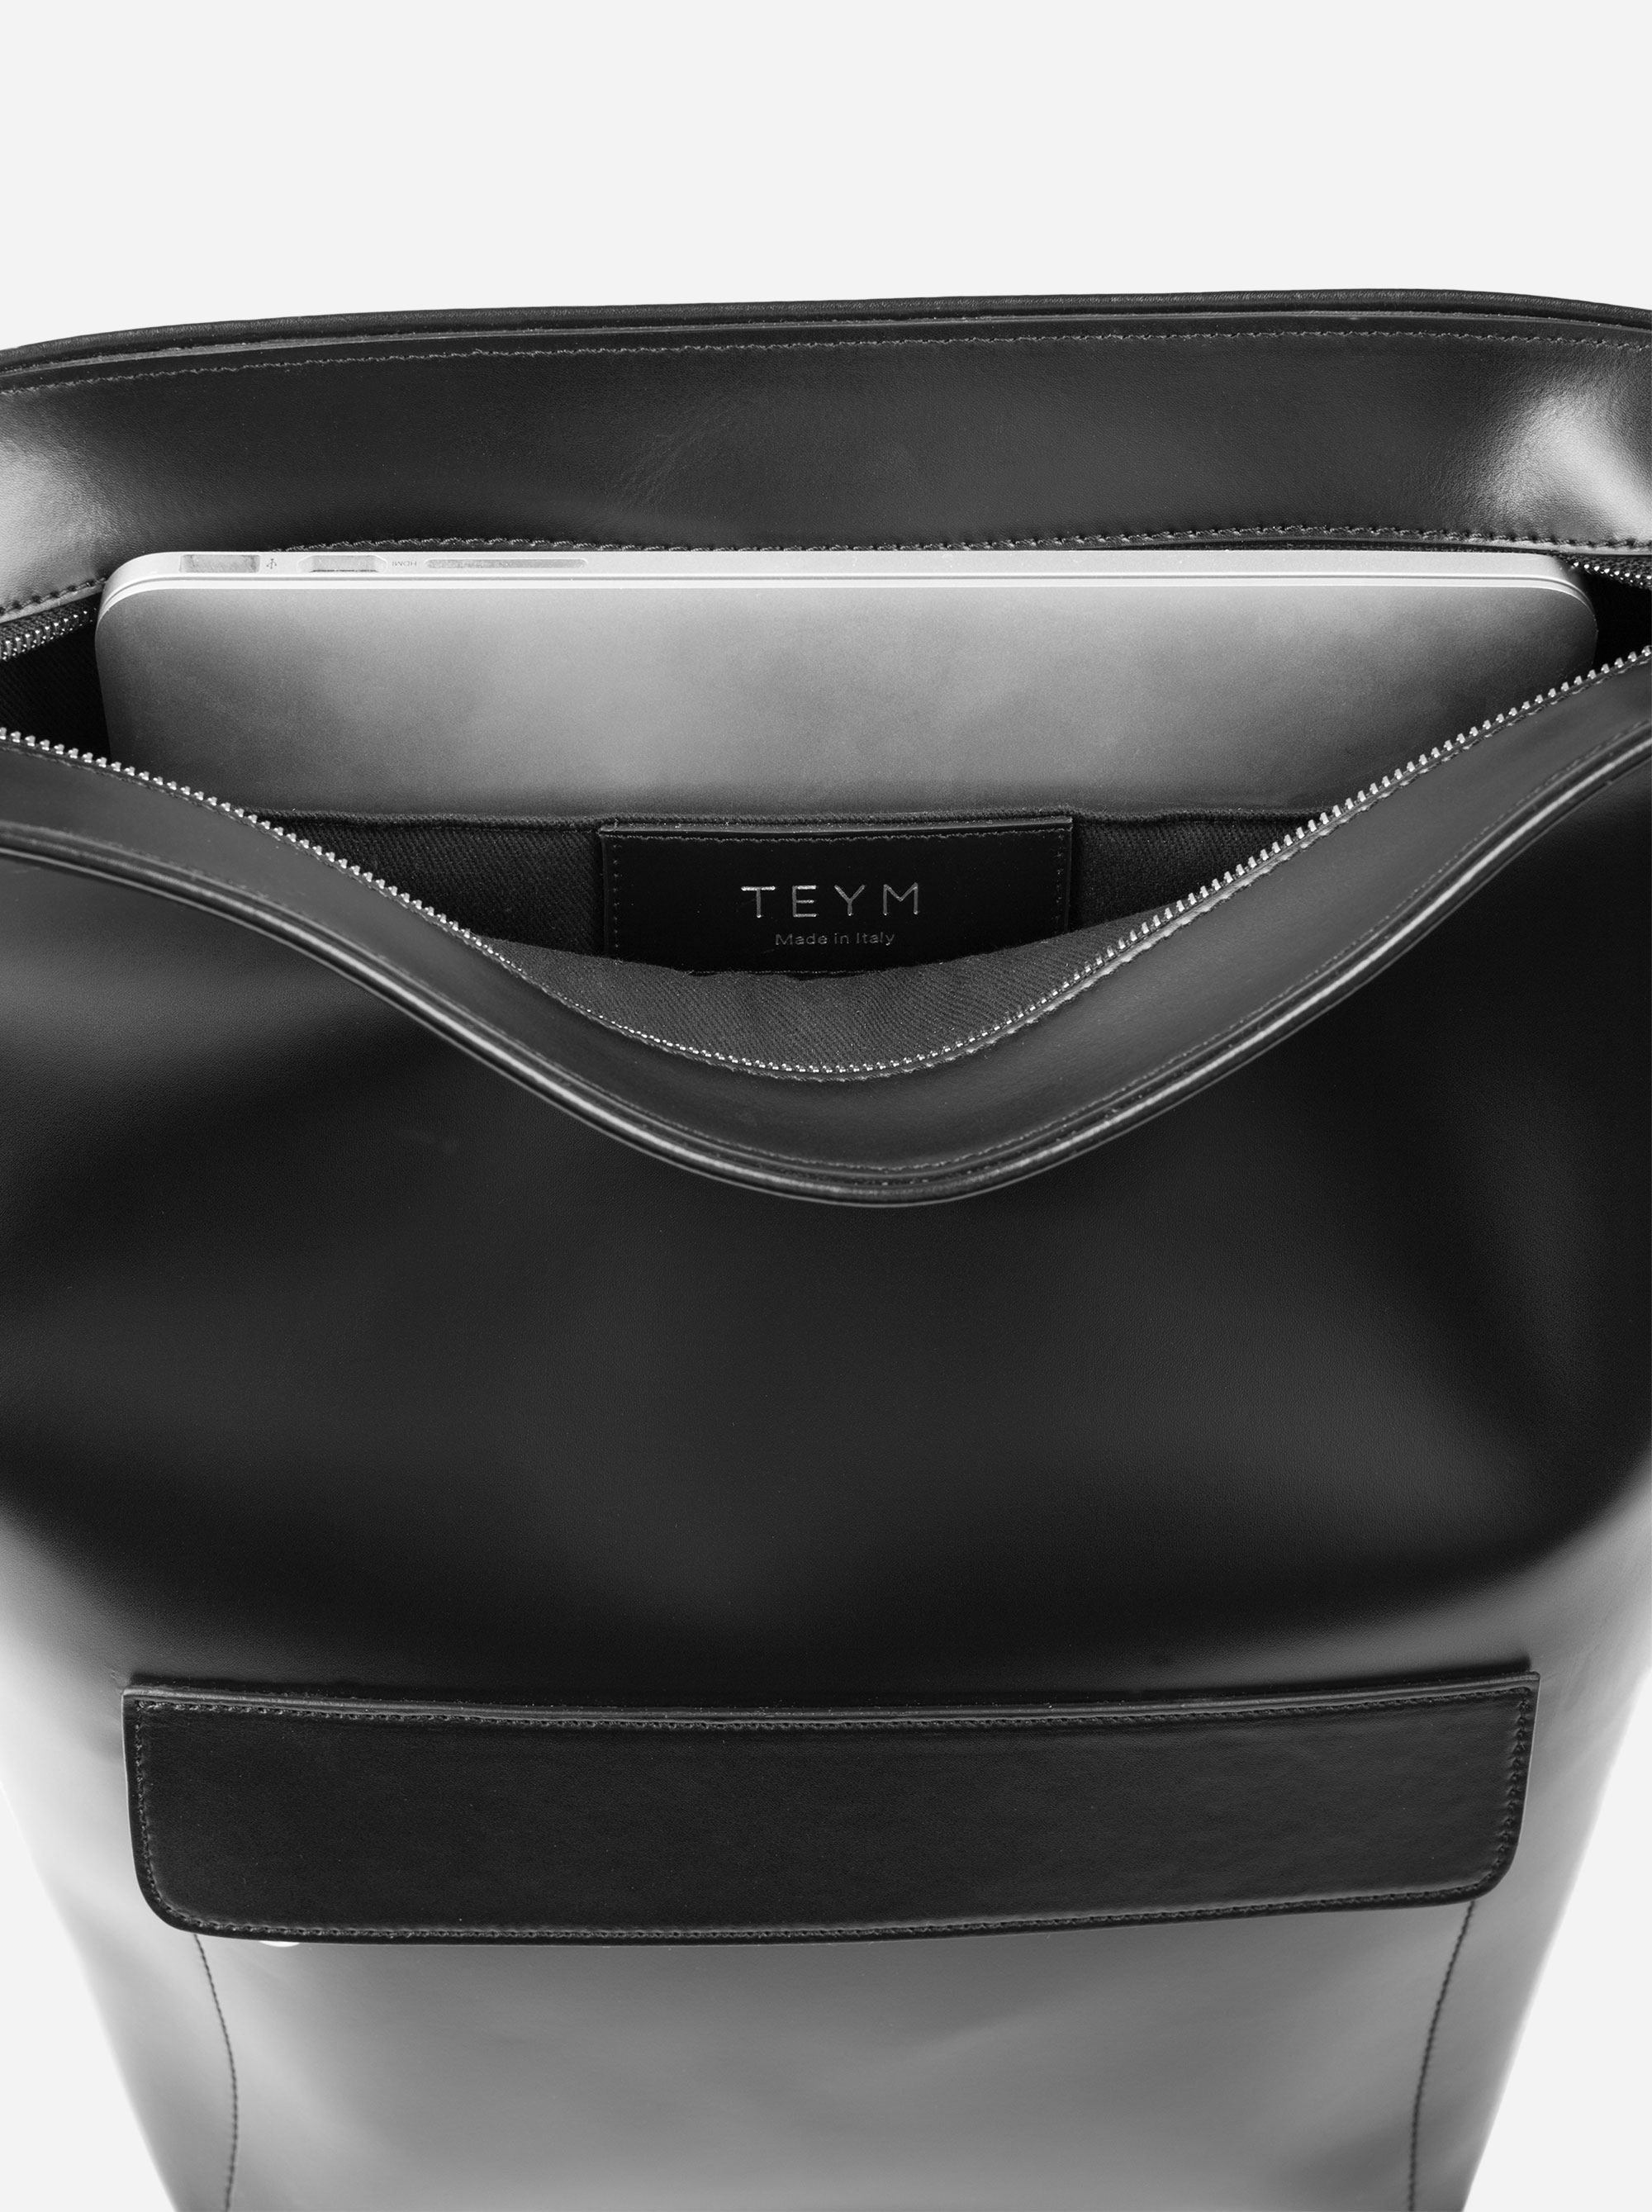 Teym - The Shoulder Bag - Black - 3